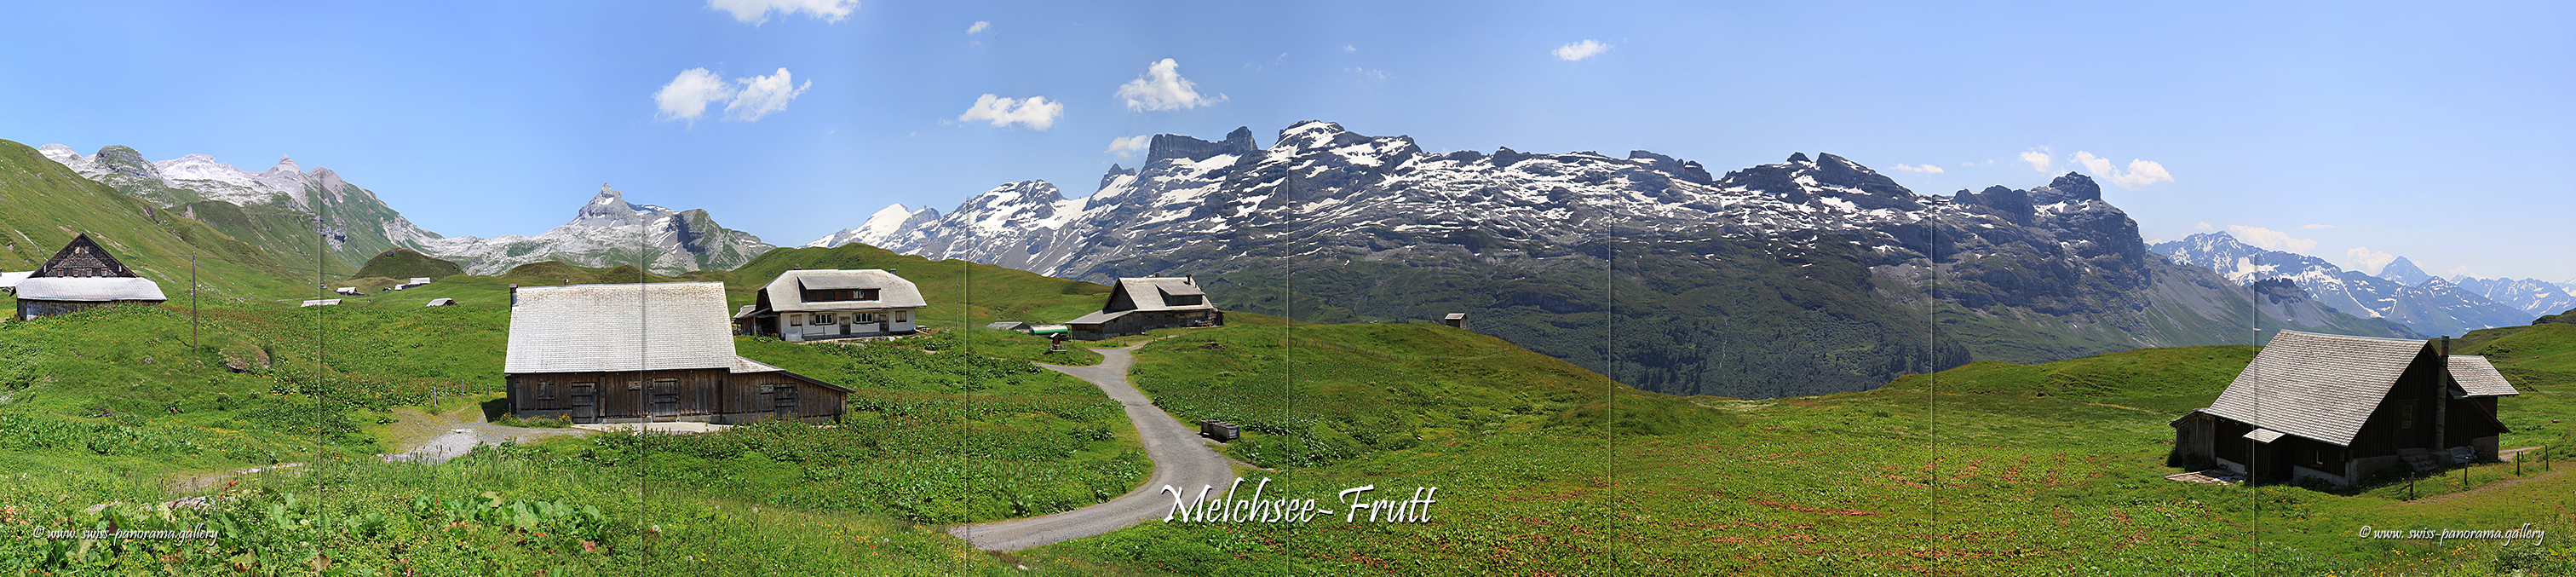 Switzerland Panorama Melchsee_Frutt